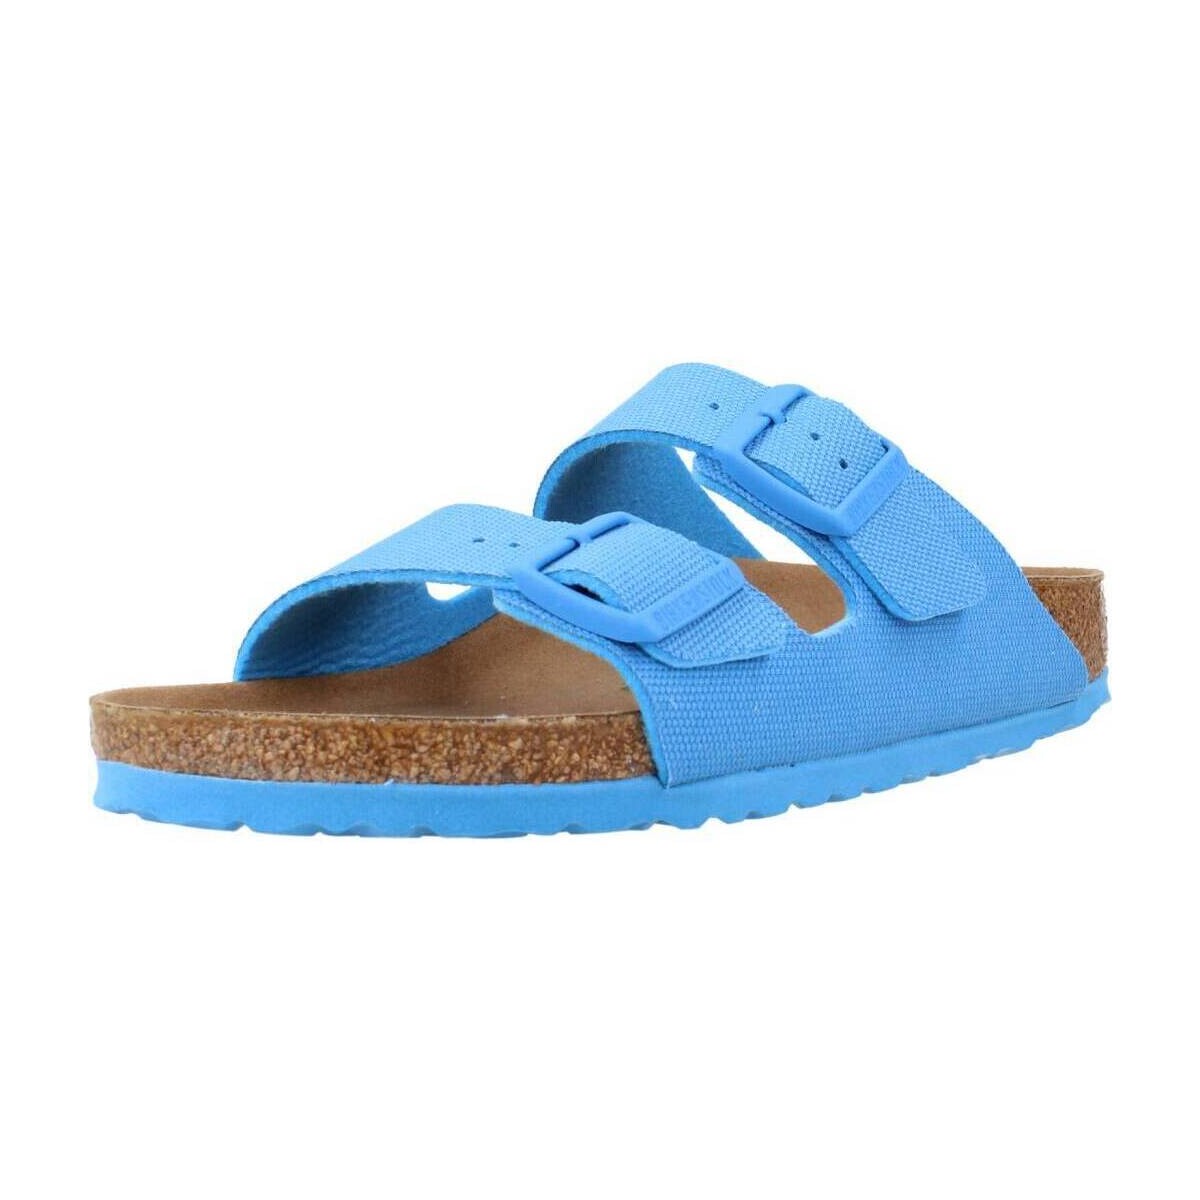 kengät Sandaalit ja avokkaat Birkenstock ARIZONA TEX CANVAS Sininen